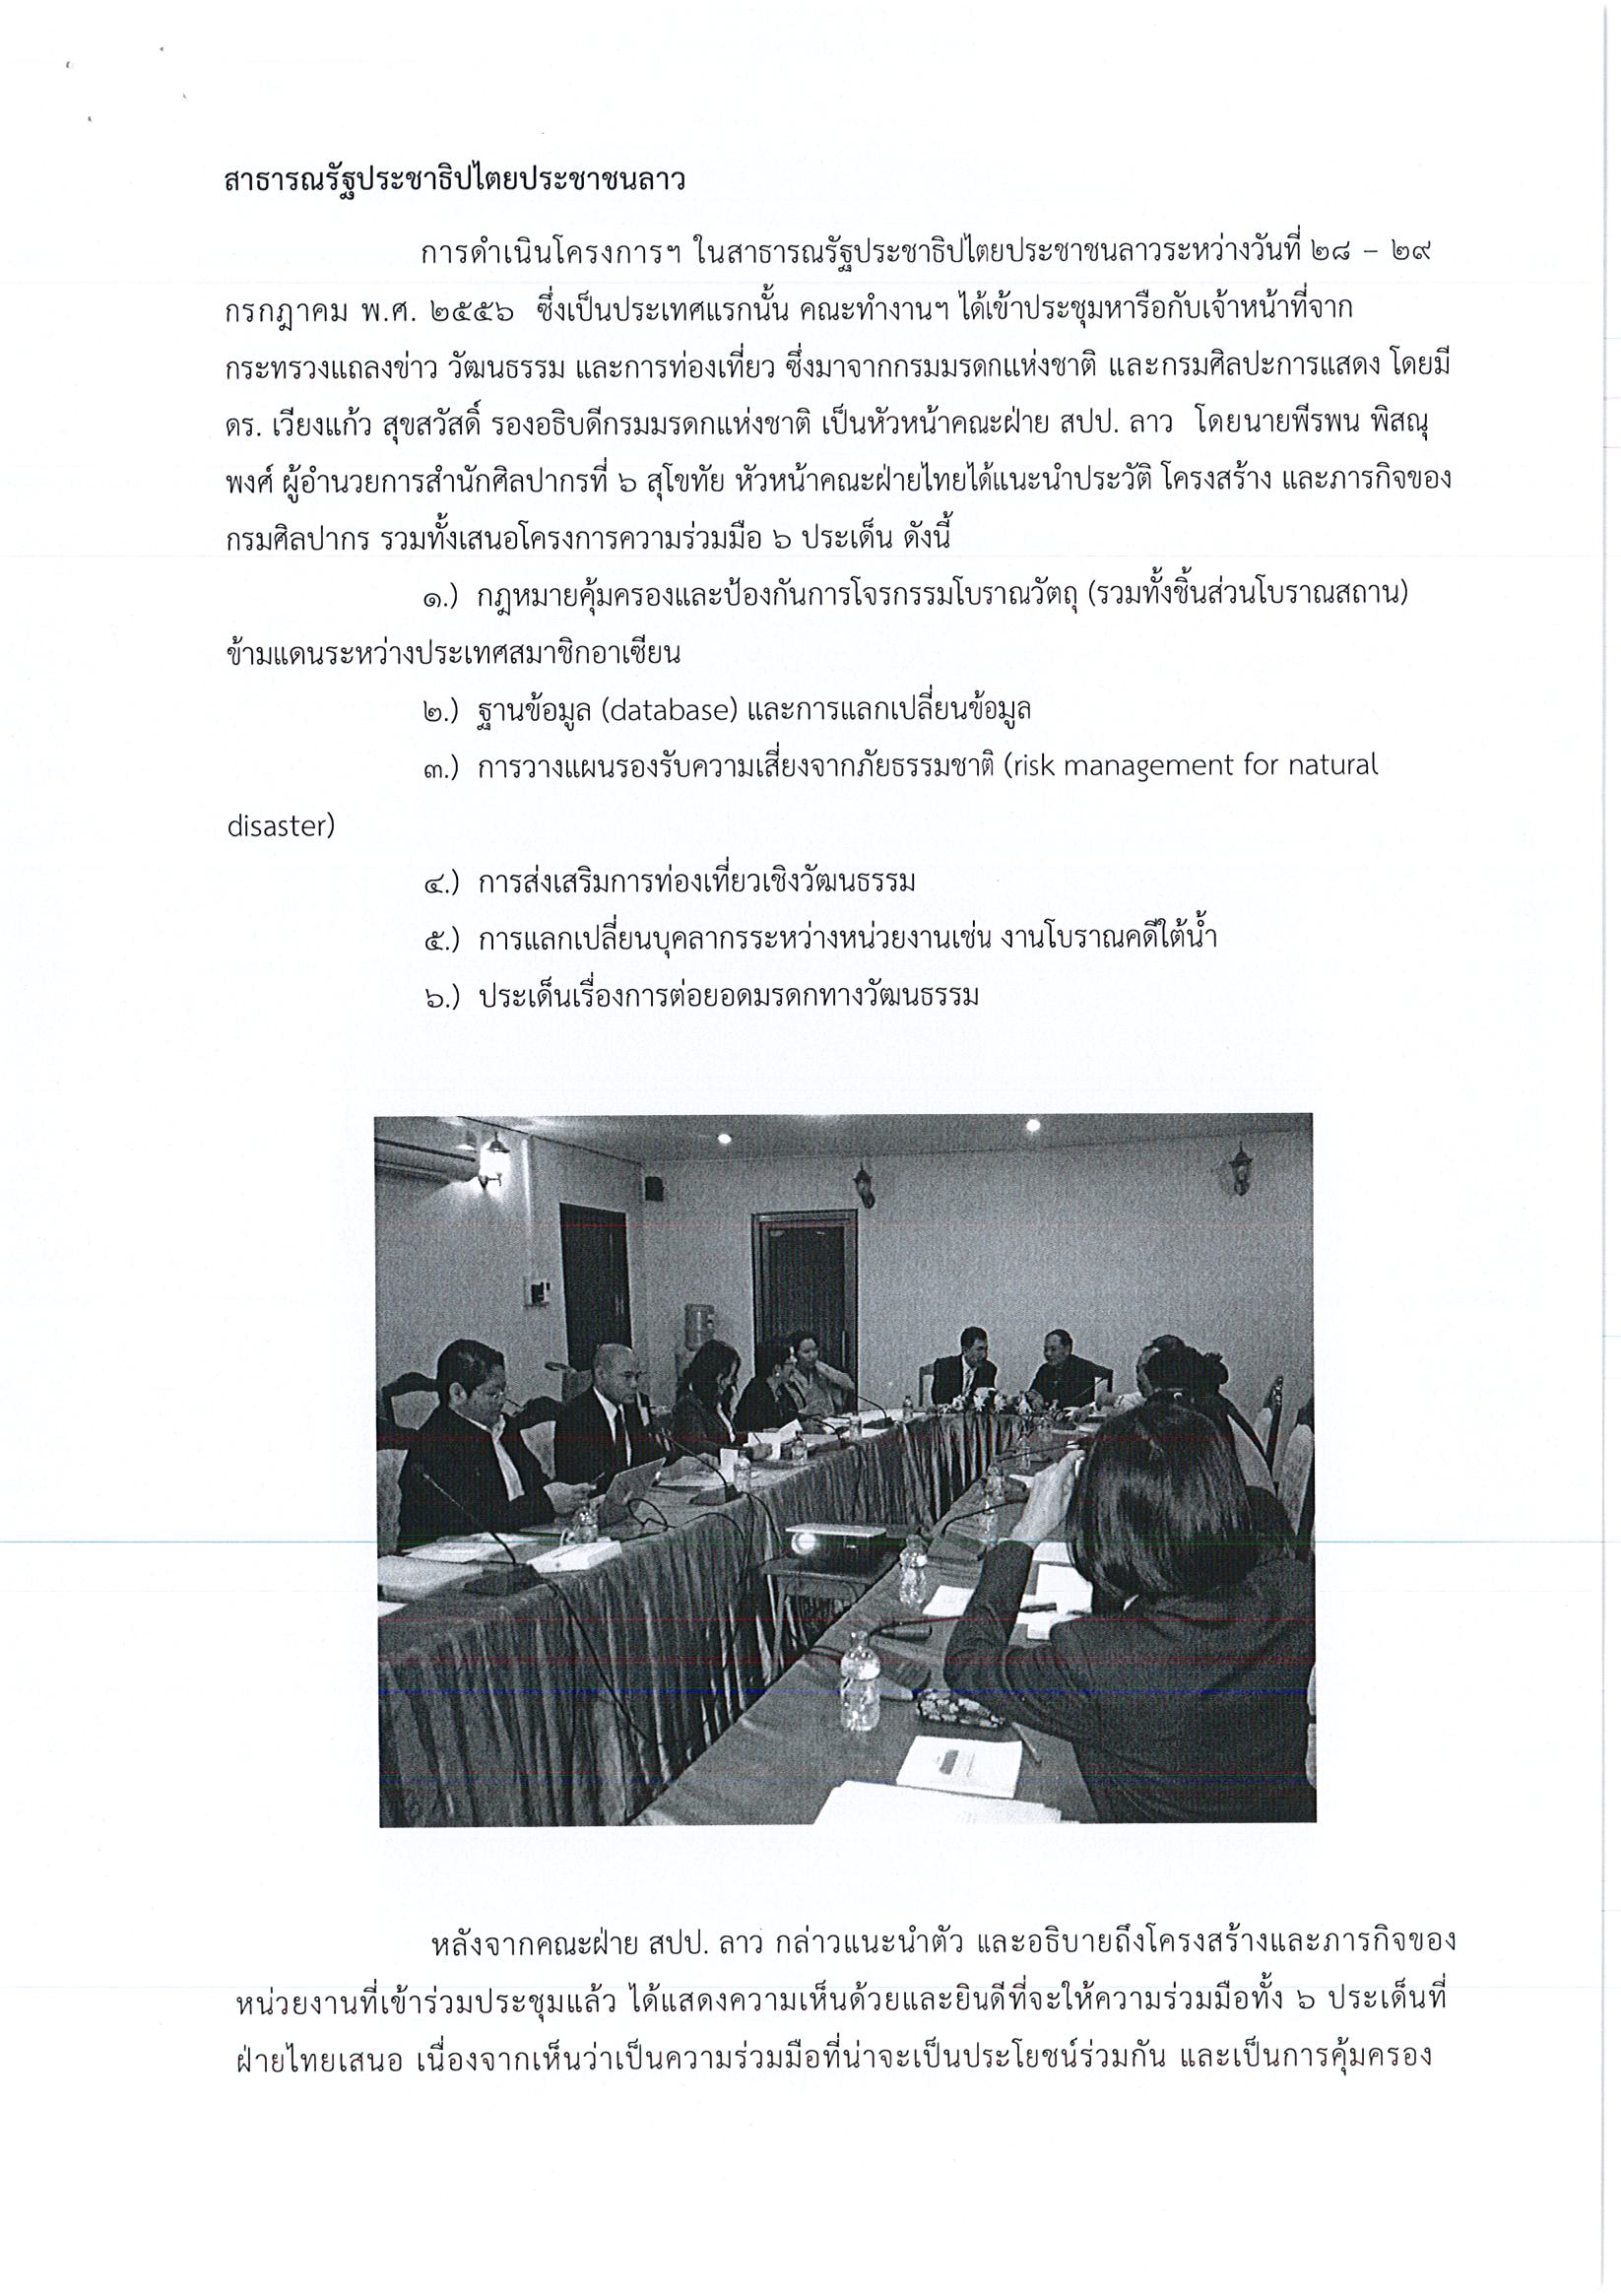 รายงานการเดินทางไปราชการ ณ สาธารณรัฐประชาธิปไตยประชาชนลาว ราชอาณาจักรกัมพูชา และสาธารณรัฐแห่งสหภาพเมียนมา ระหว่างวันที่ 28 กรกฏาคม - 2 สิงหาคม 2556 โครงการแลกเปลี่ยนความร่วมมือด้านการบริหารจัดการมรดกวัฒนธรรมอาเซียน เส้นทางที่ 1